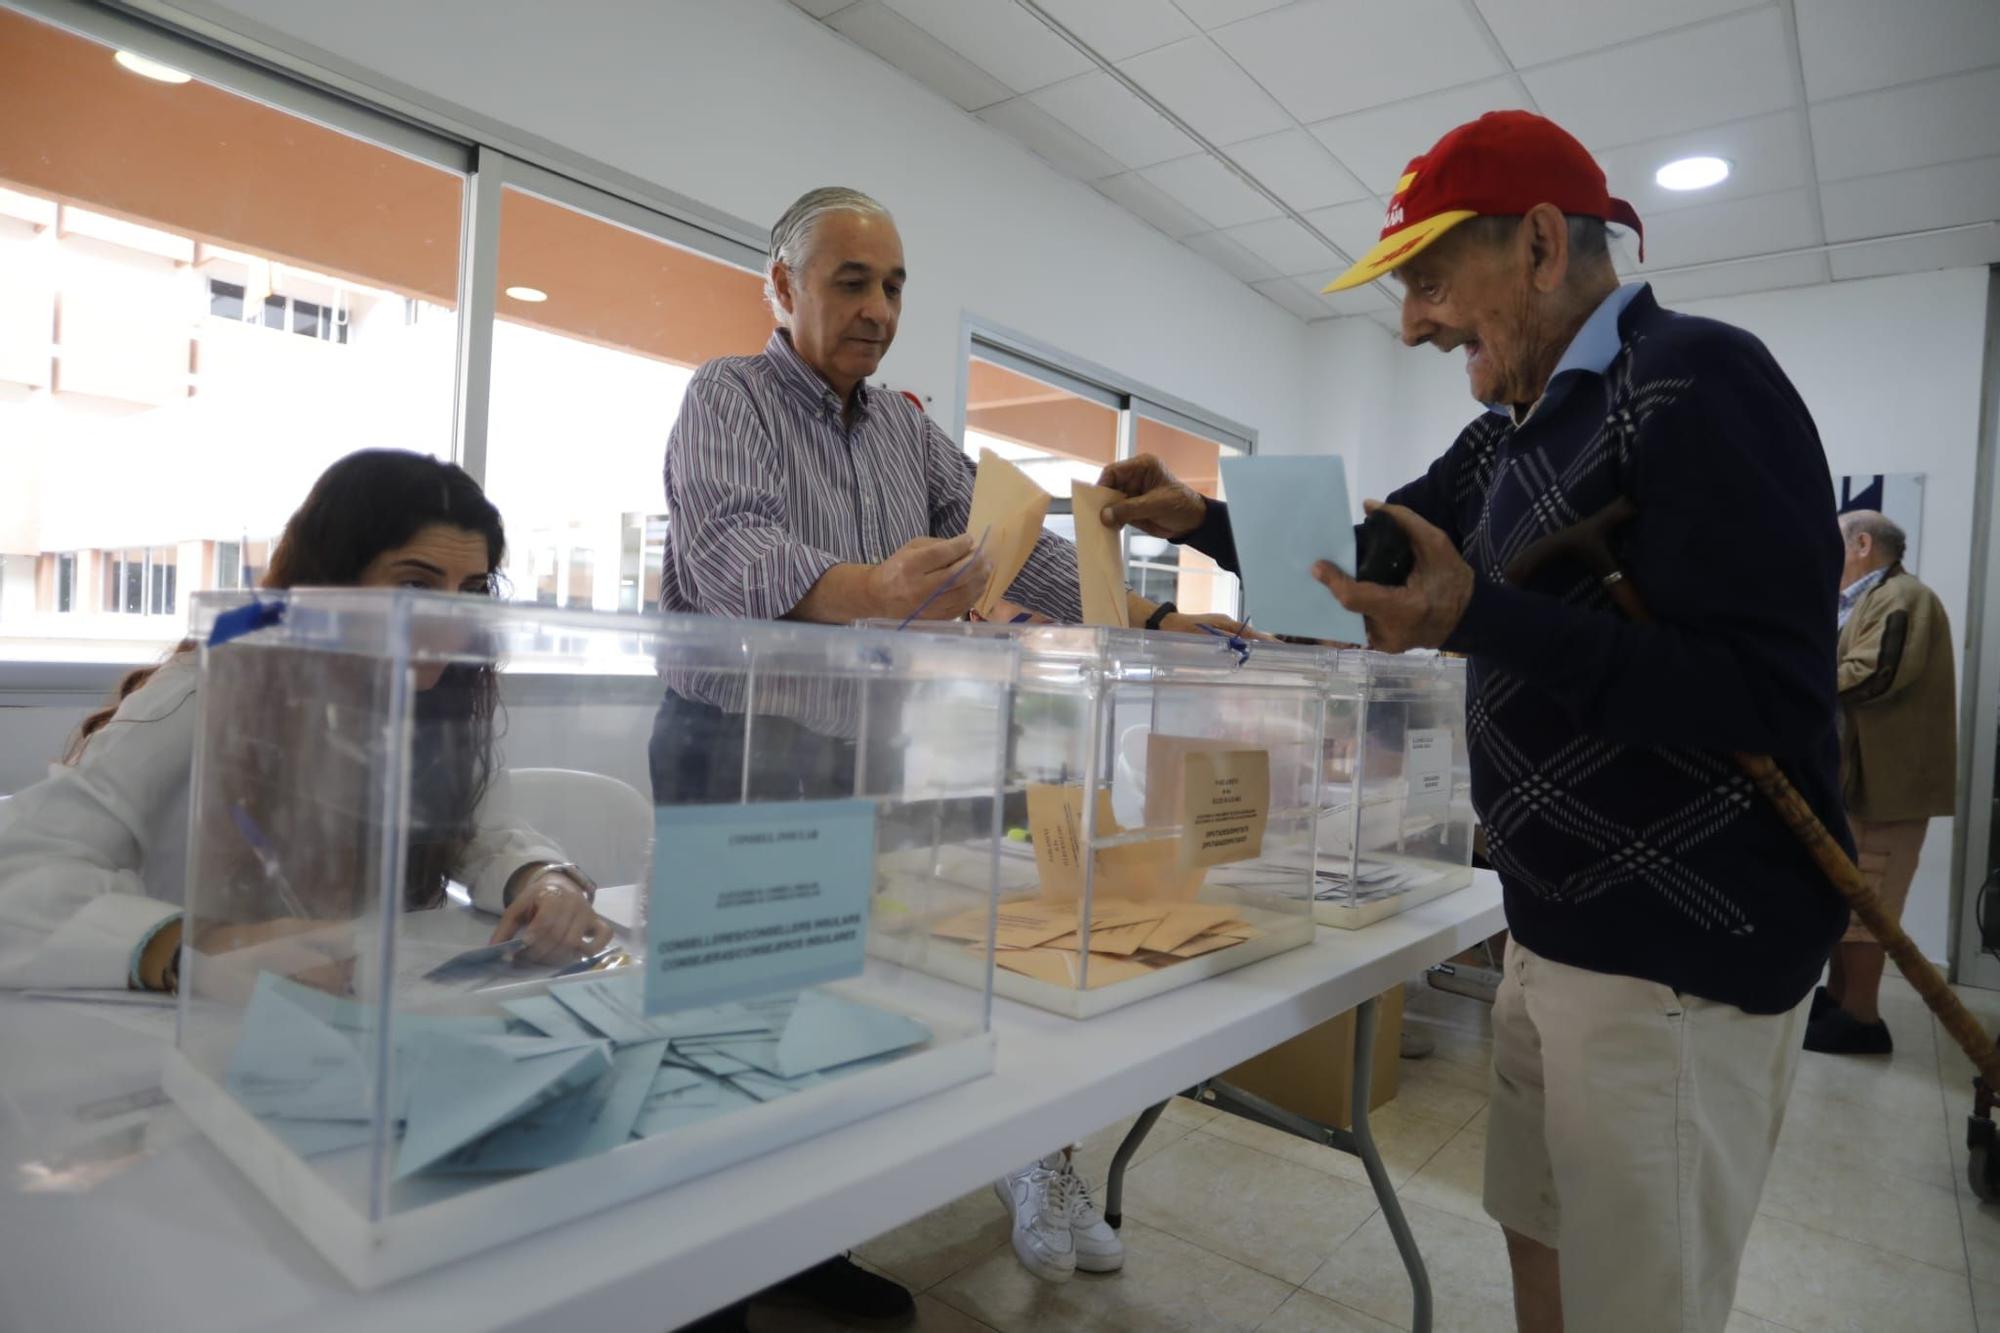 Elecciones en la residencia La Bonanova de Mallorca: "A mi el que me gustaba era aquel guapo, Adolfo Suárez"